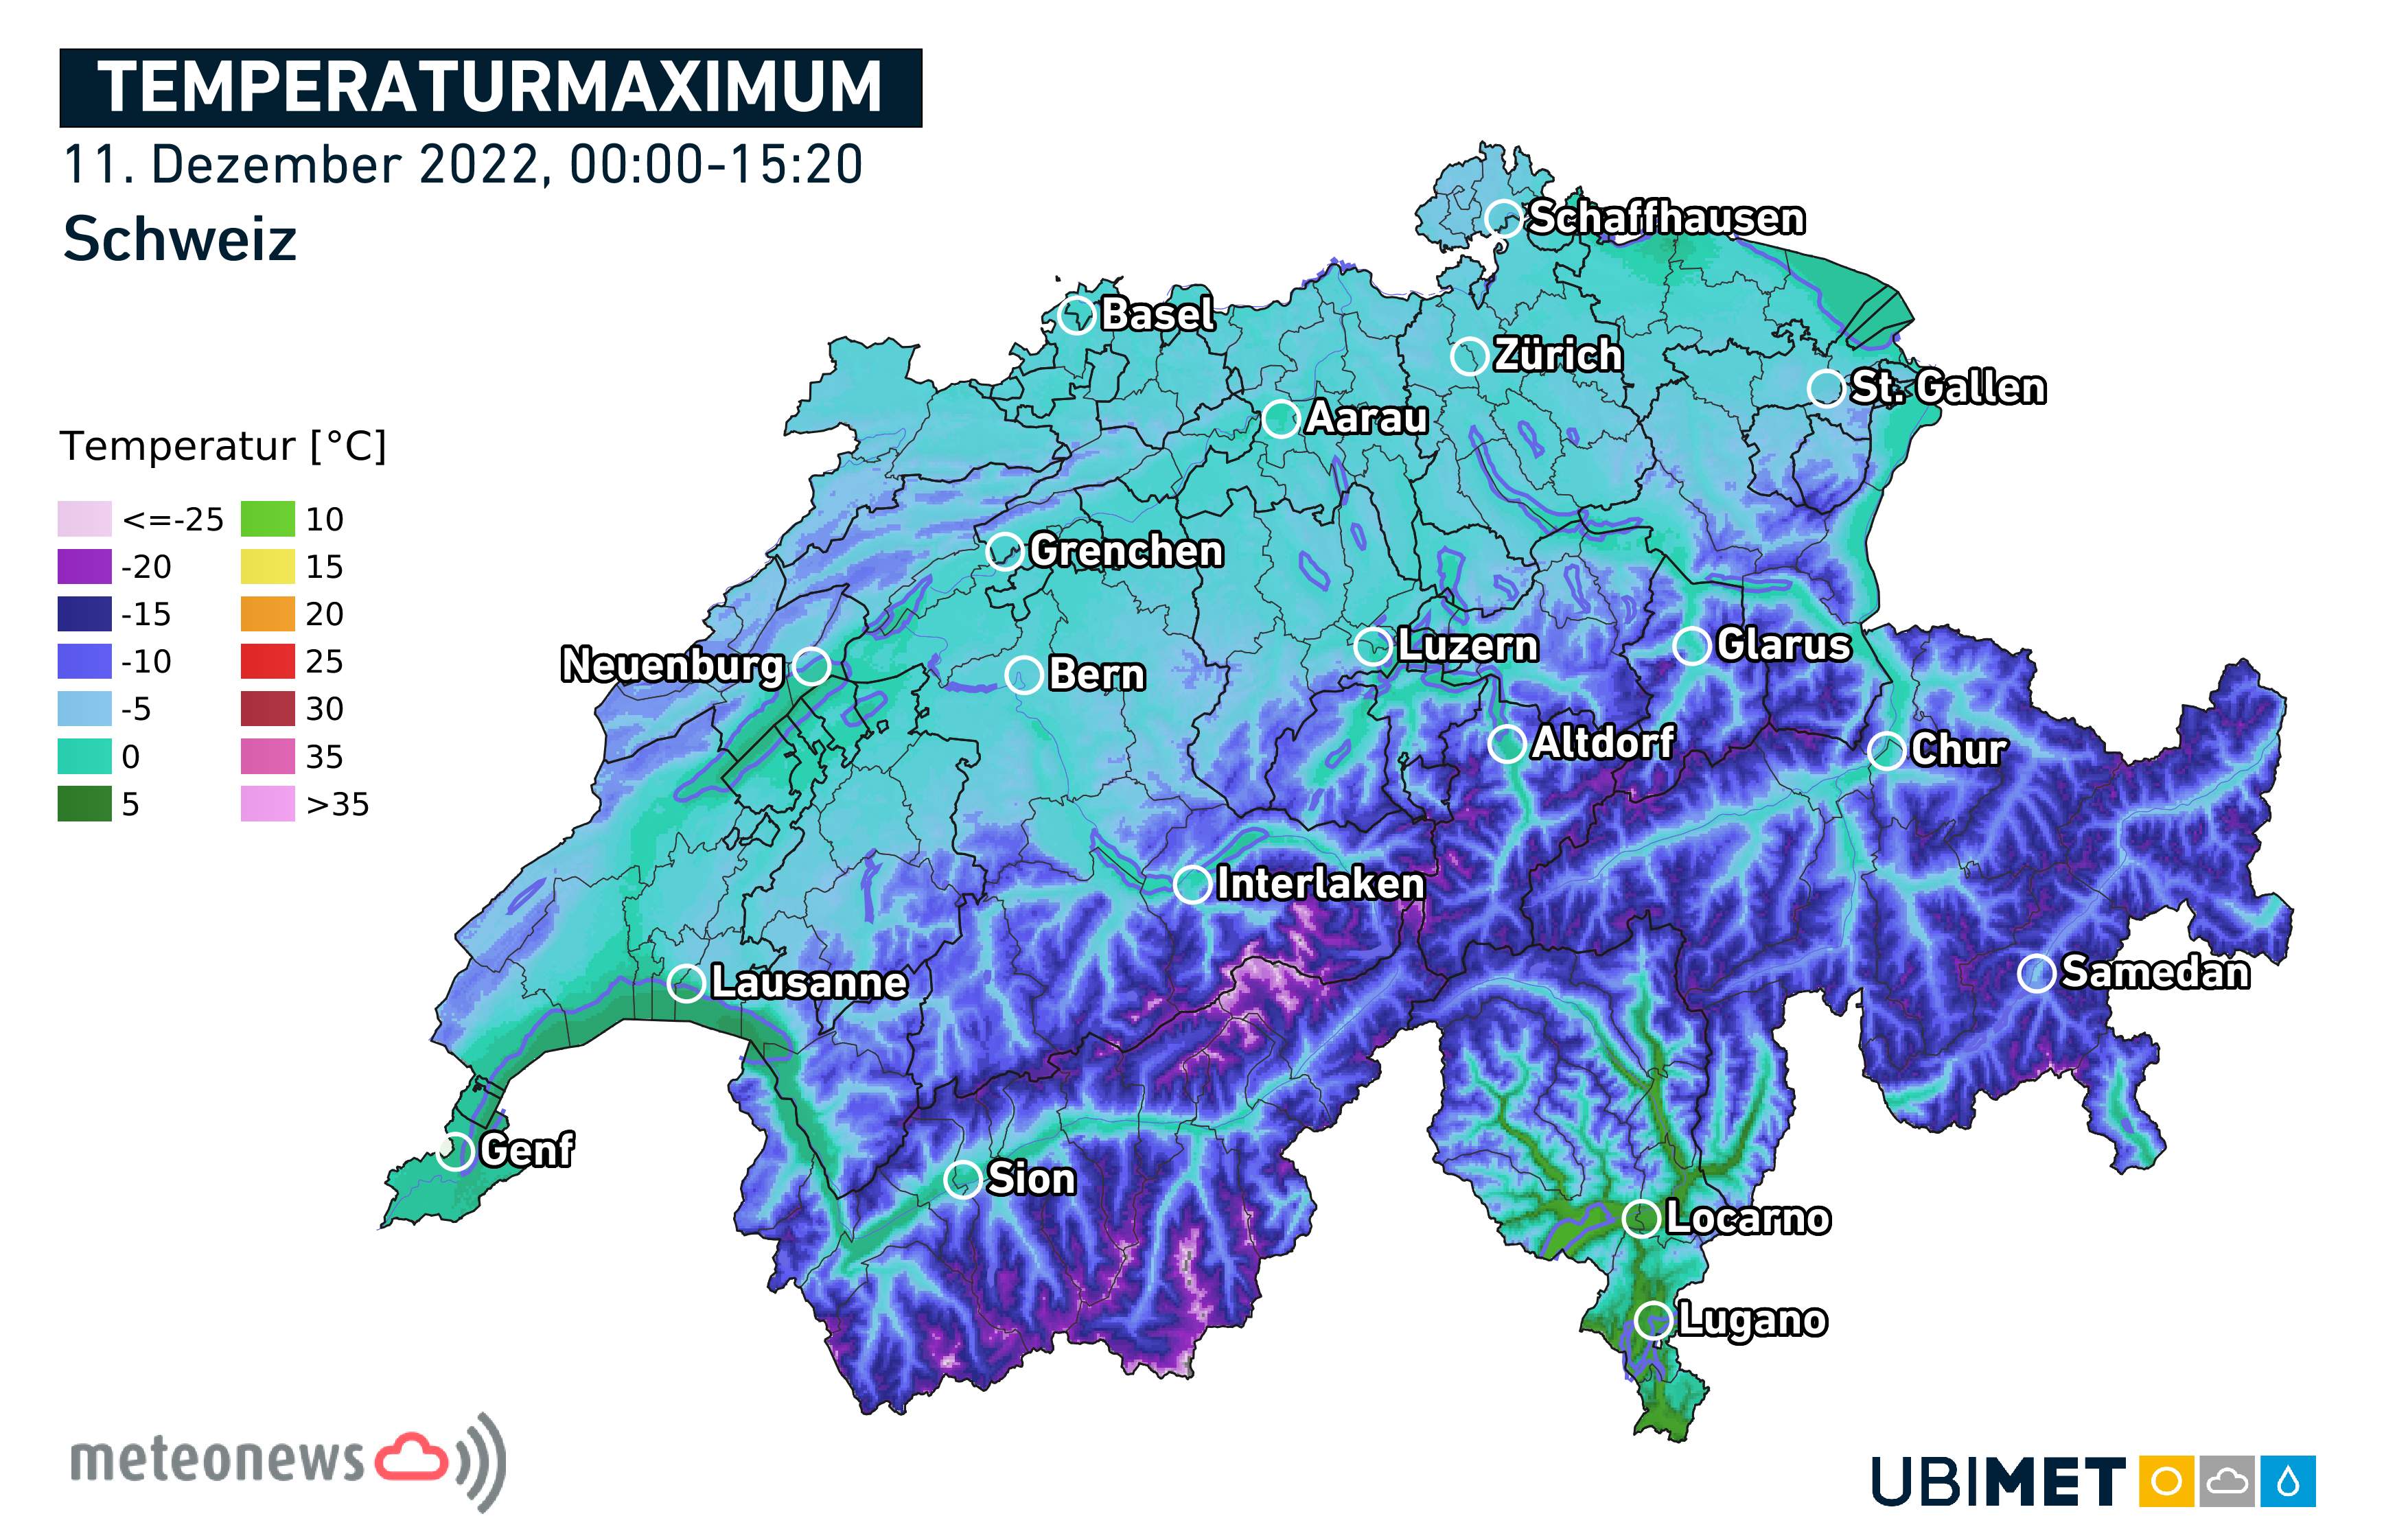 Abb. 1: Die Höchsttemperaturen blieben auf der Alpennordseite heute vielerorts im negativen Bereich (alle Regionen die blaublau bis dunkelblau und violett gefärbt sind).